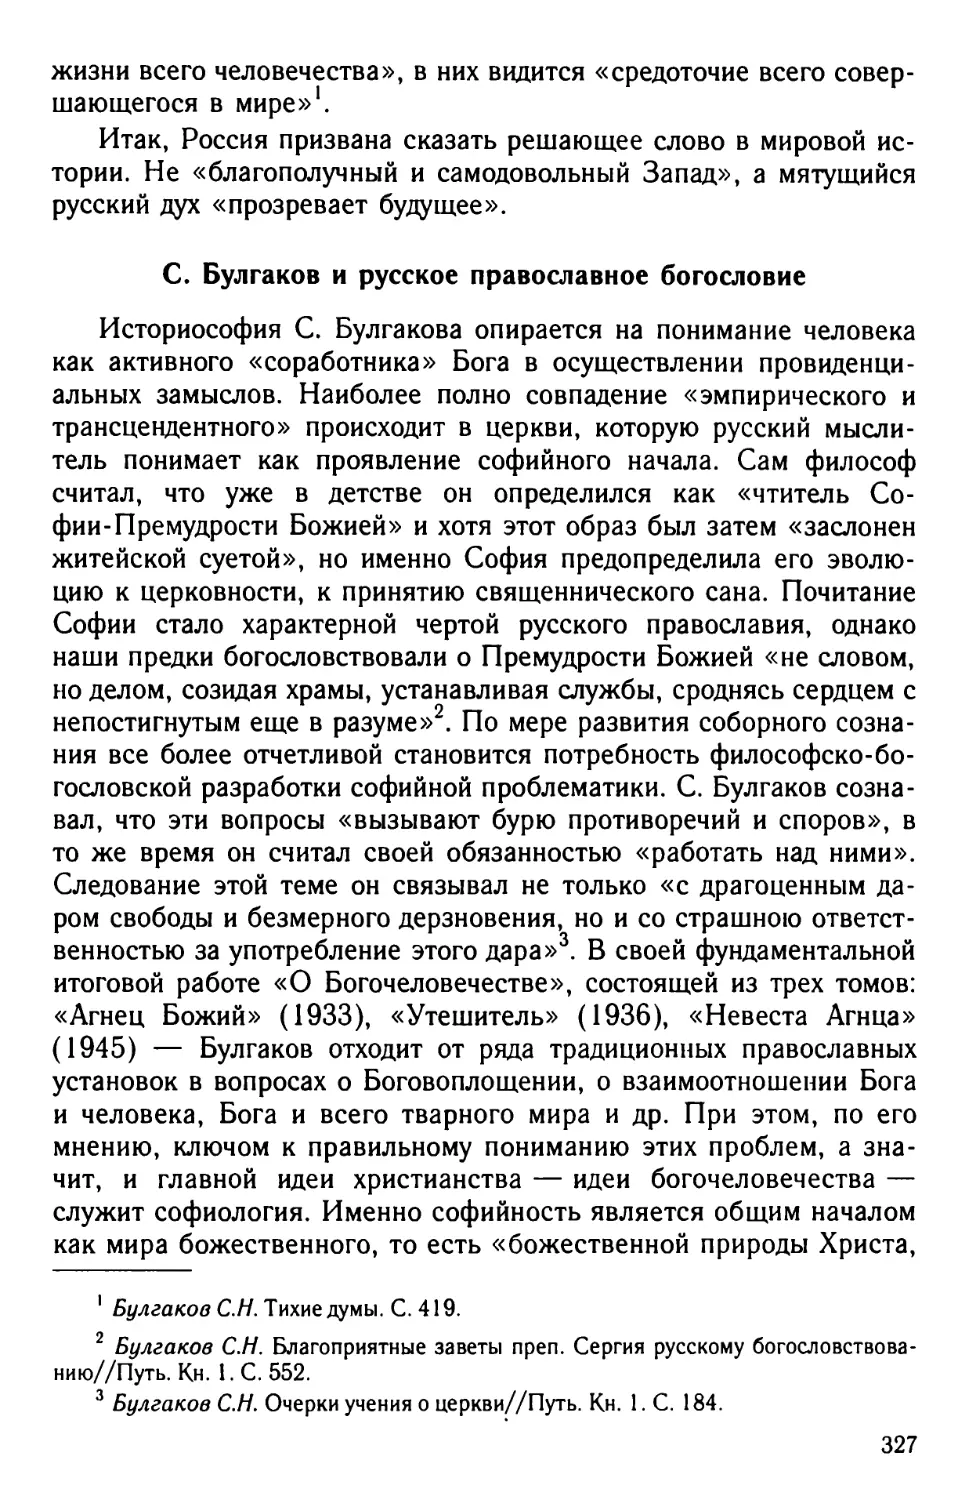 С. Булгаков и русское православное богословие